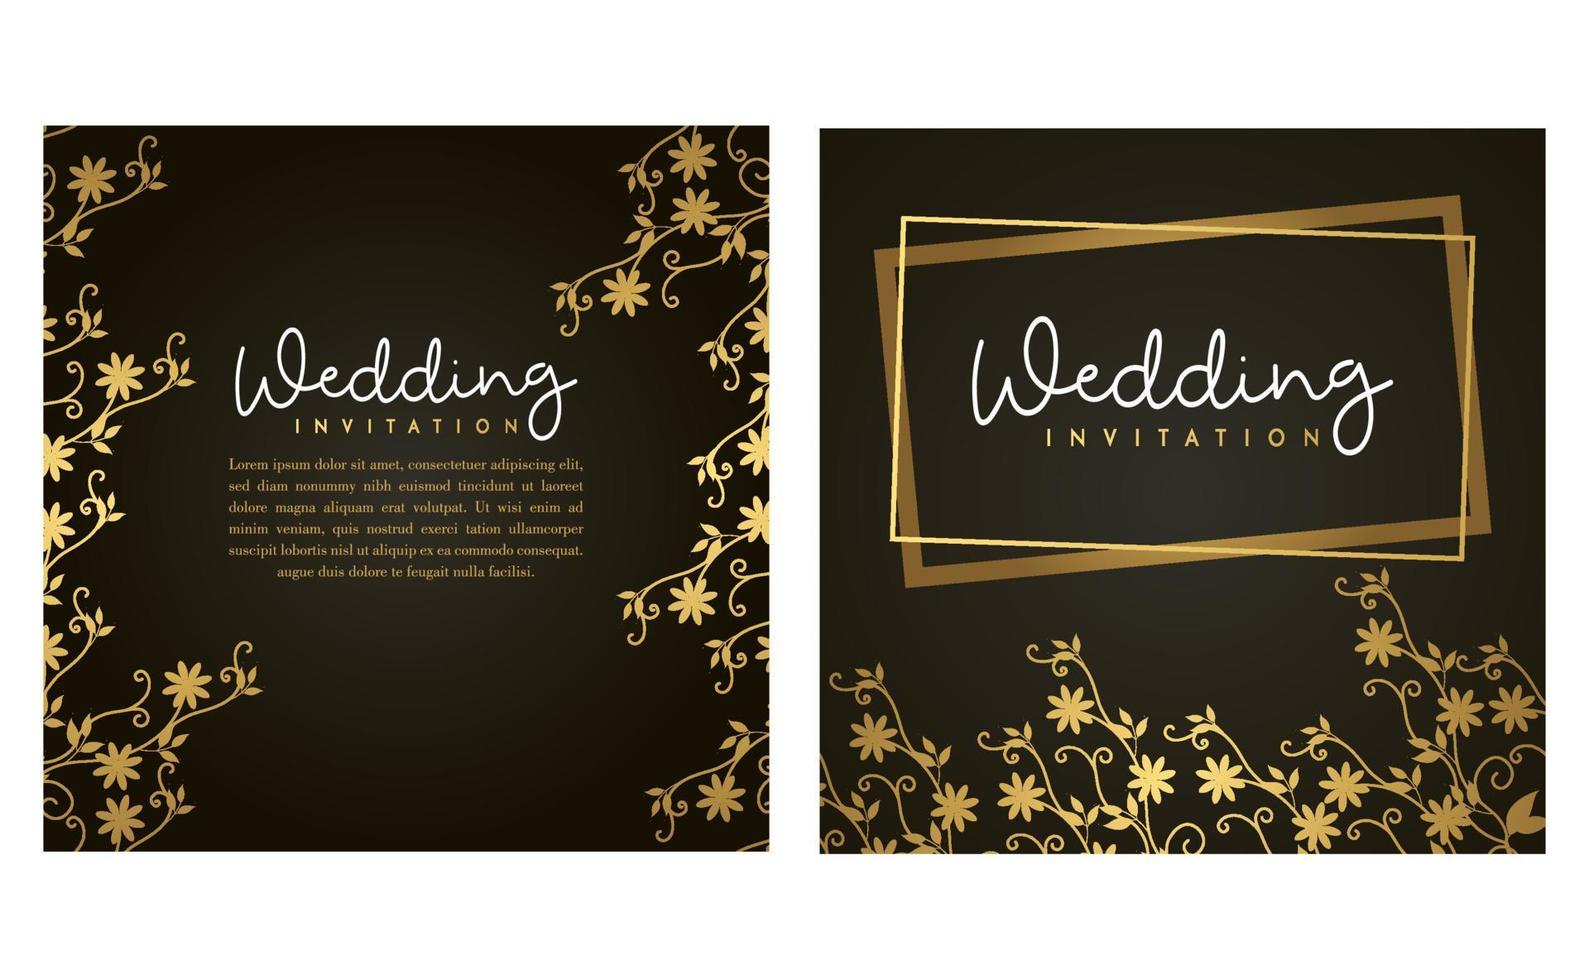 carte d'invitation de mariage d'or. carte d'invitation avec concept de luxe, maquettes dorées. vecteur